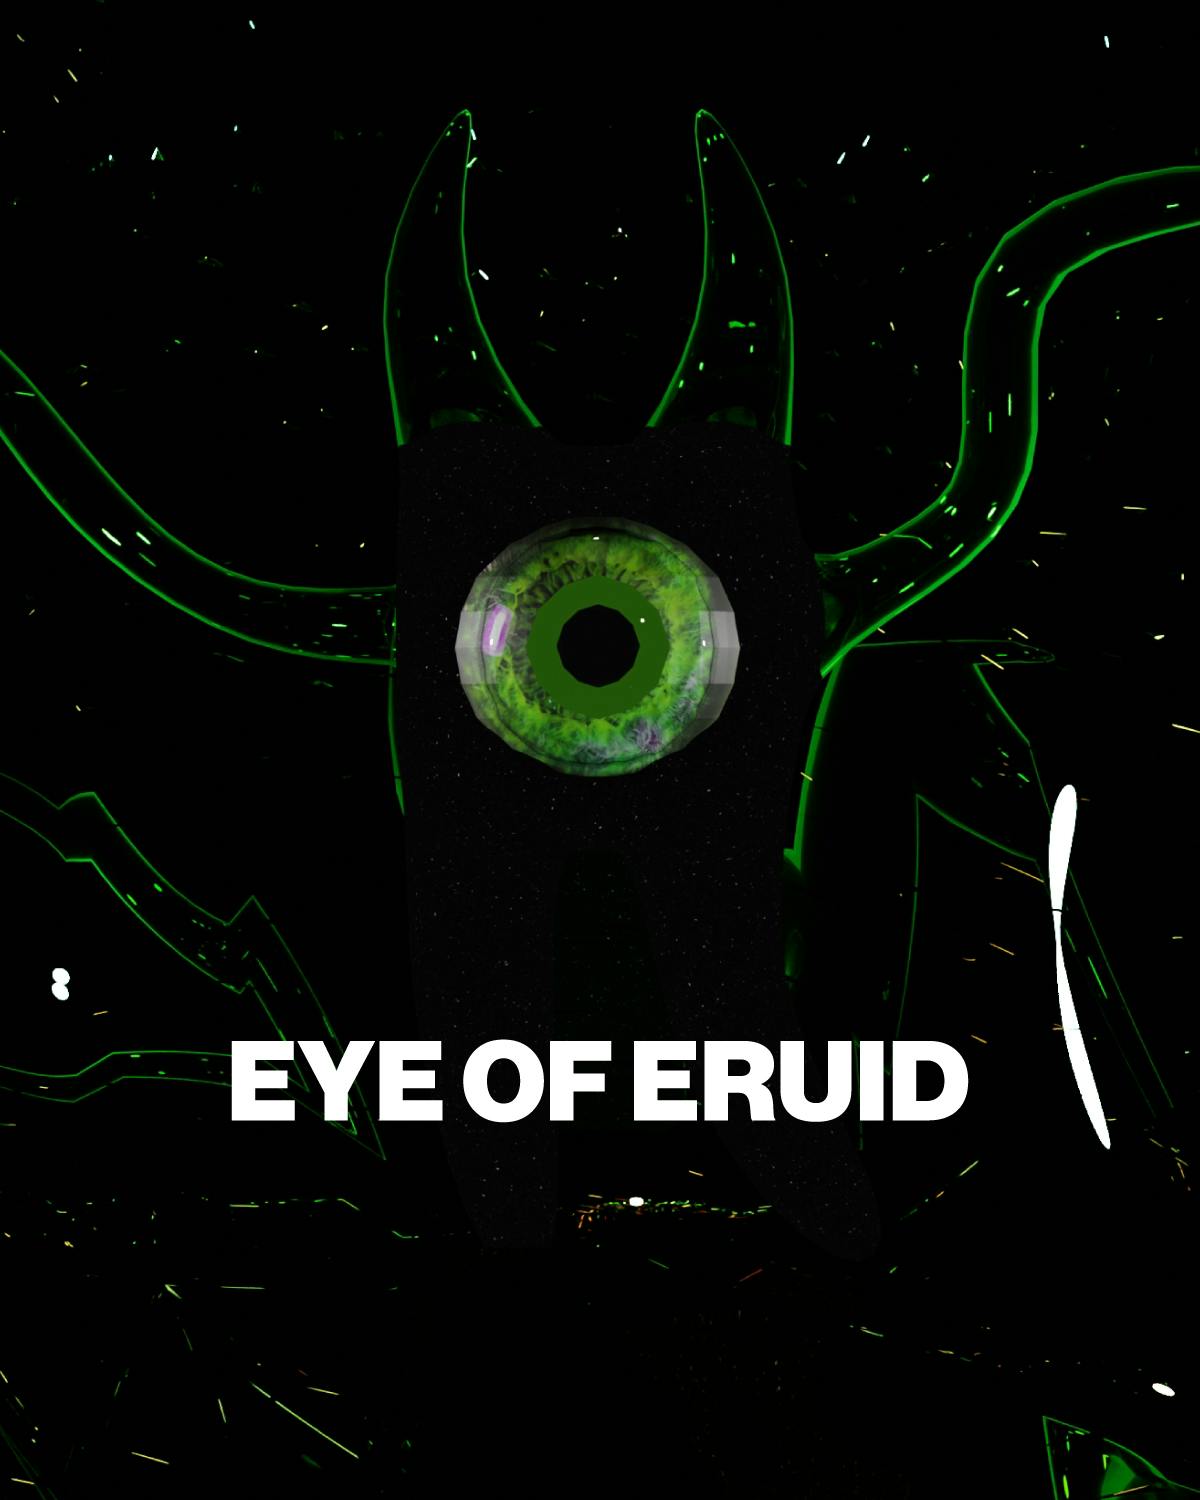 Eye of Eruid Metaverse